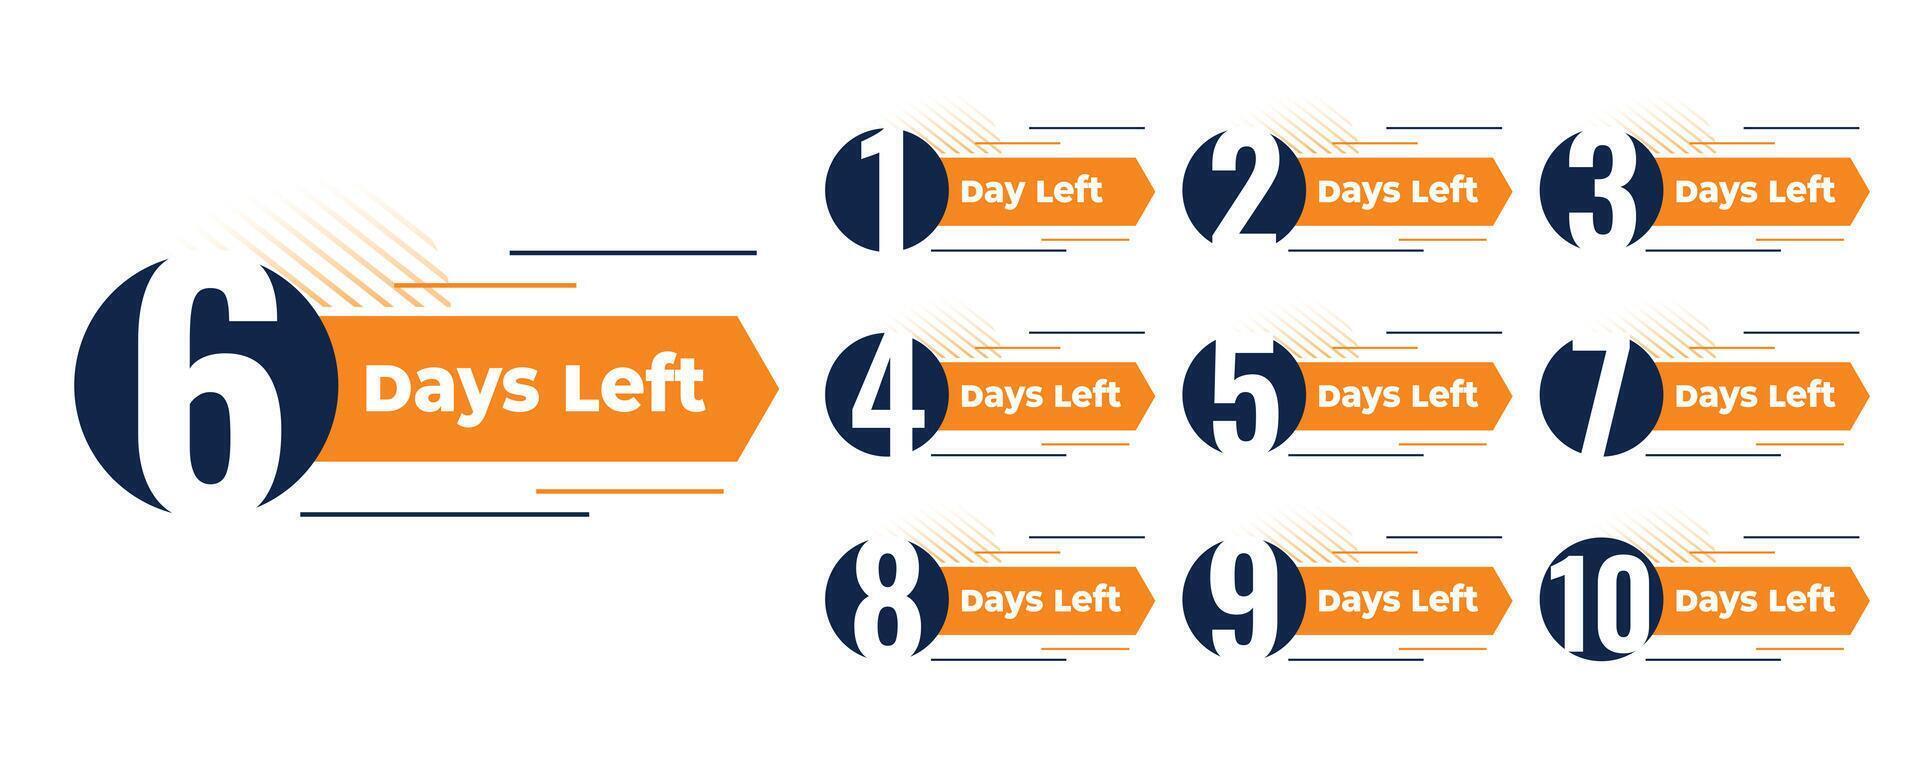 number of days left banner design vector